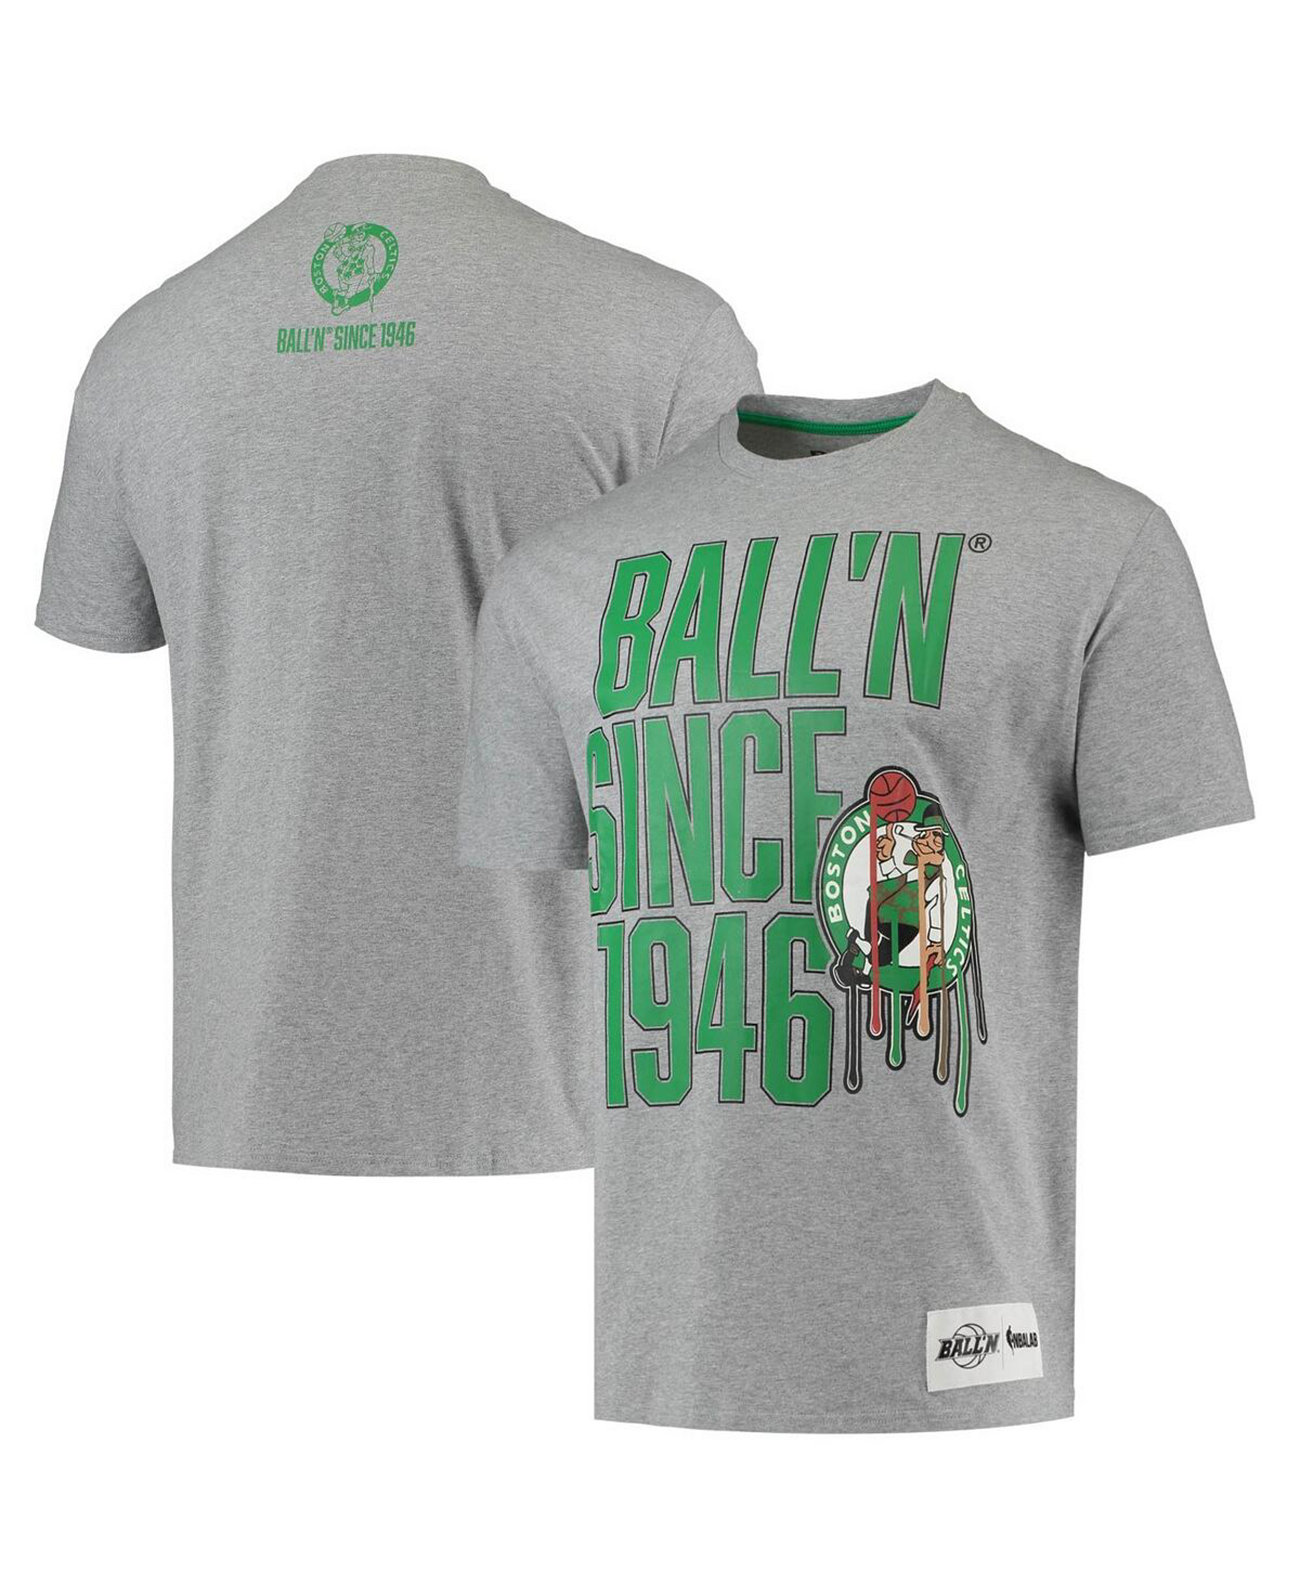 Мужская футболка Heather Grey Boston Celtics с 1946 года BALL'N